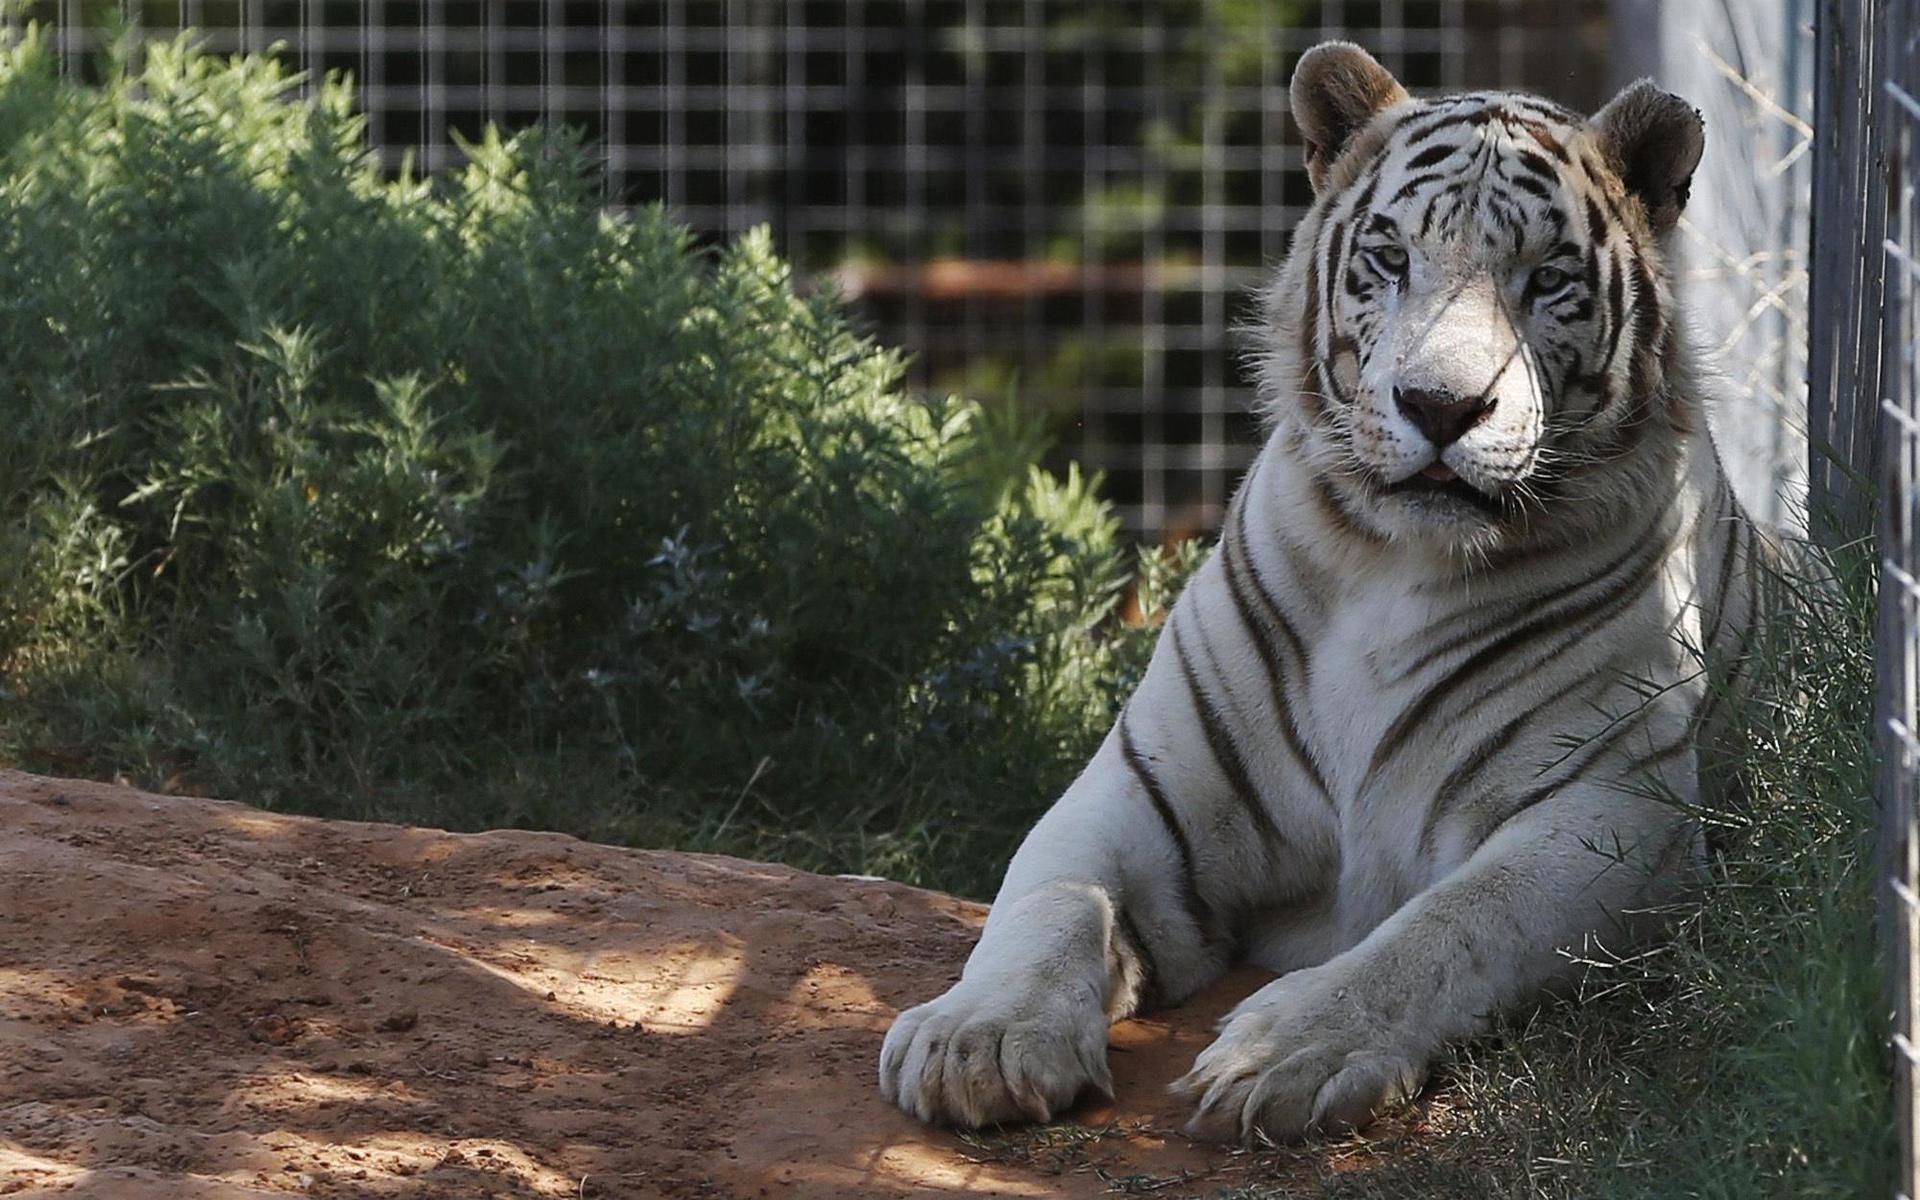 68 stora kattdjur, bland annat tigern på bilden, har omhändertagits från den djurpark i Oklahoma som förekom i Netflix-serien ”Tiger King”.